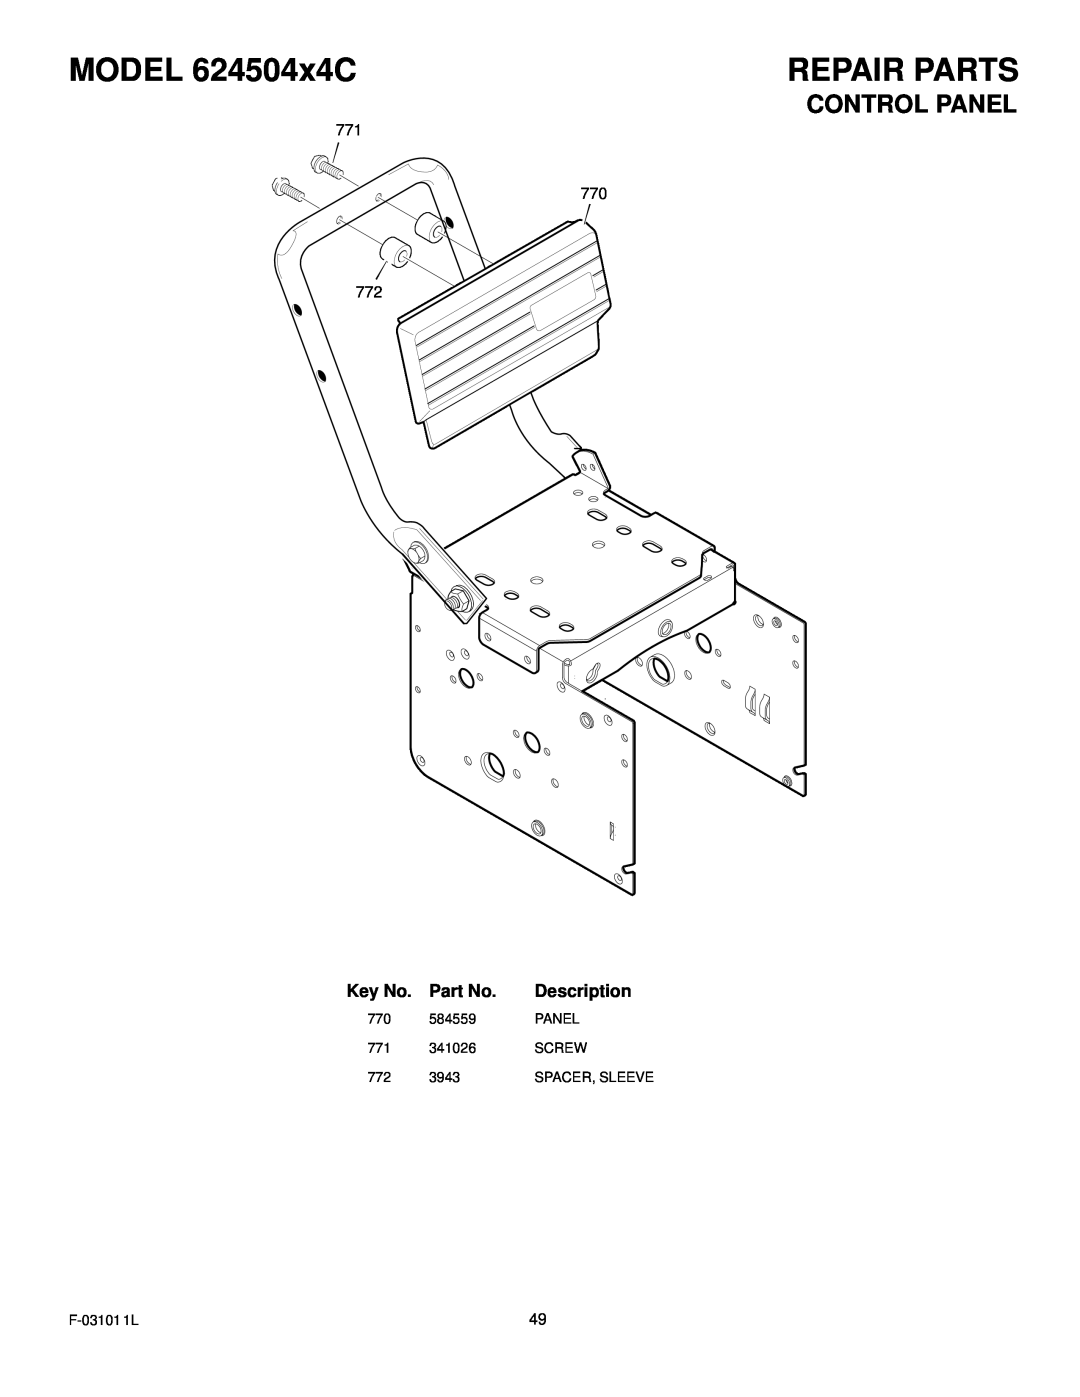 Murray manual Control Panel, MODEL 624504x4C, Repair Parts, Description 